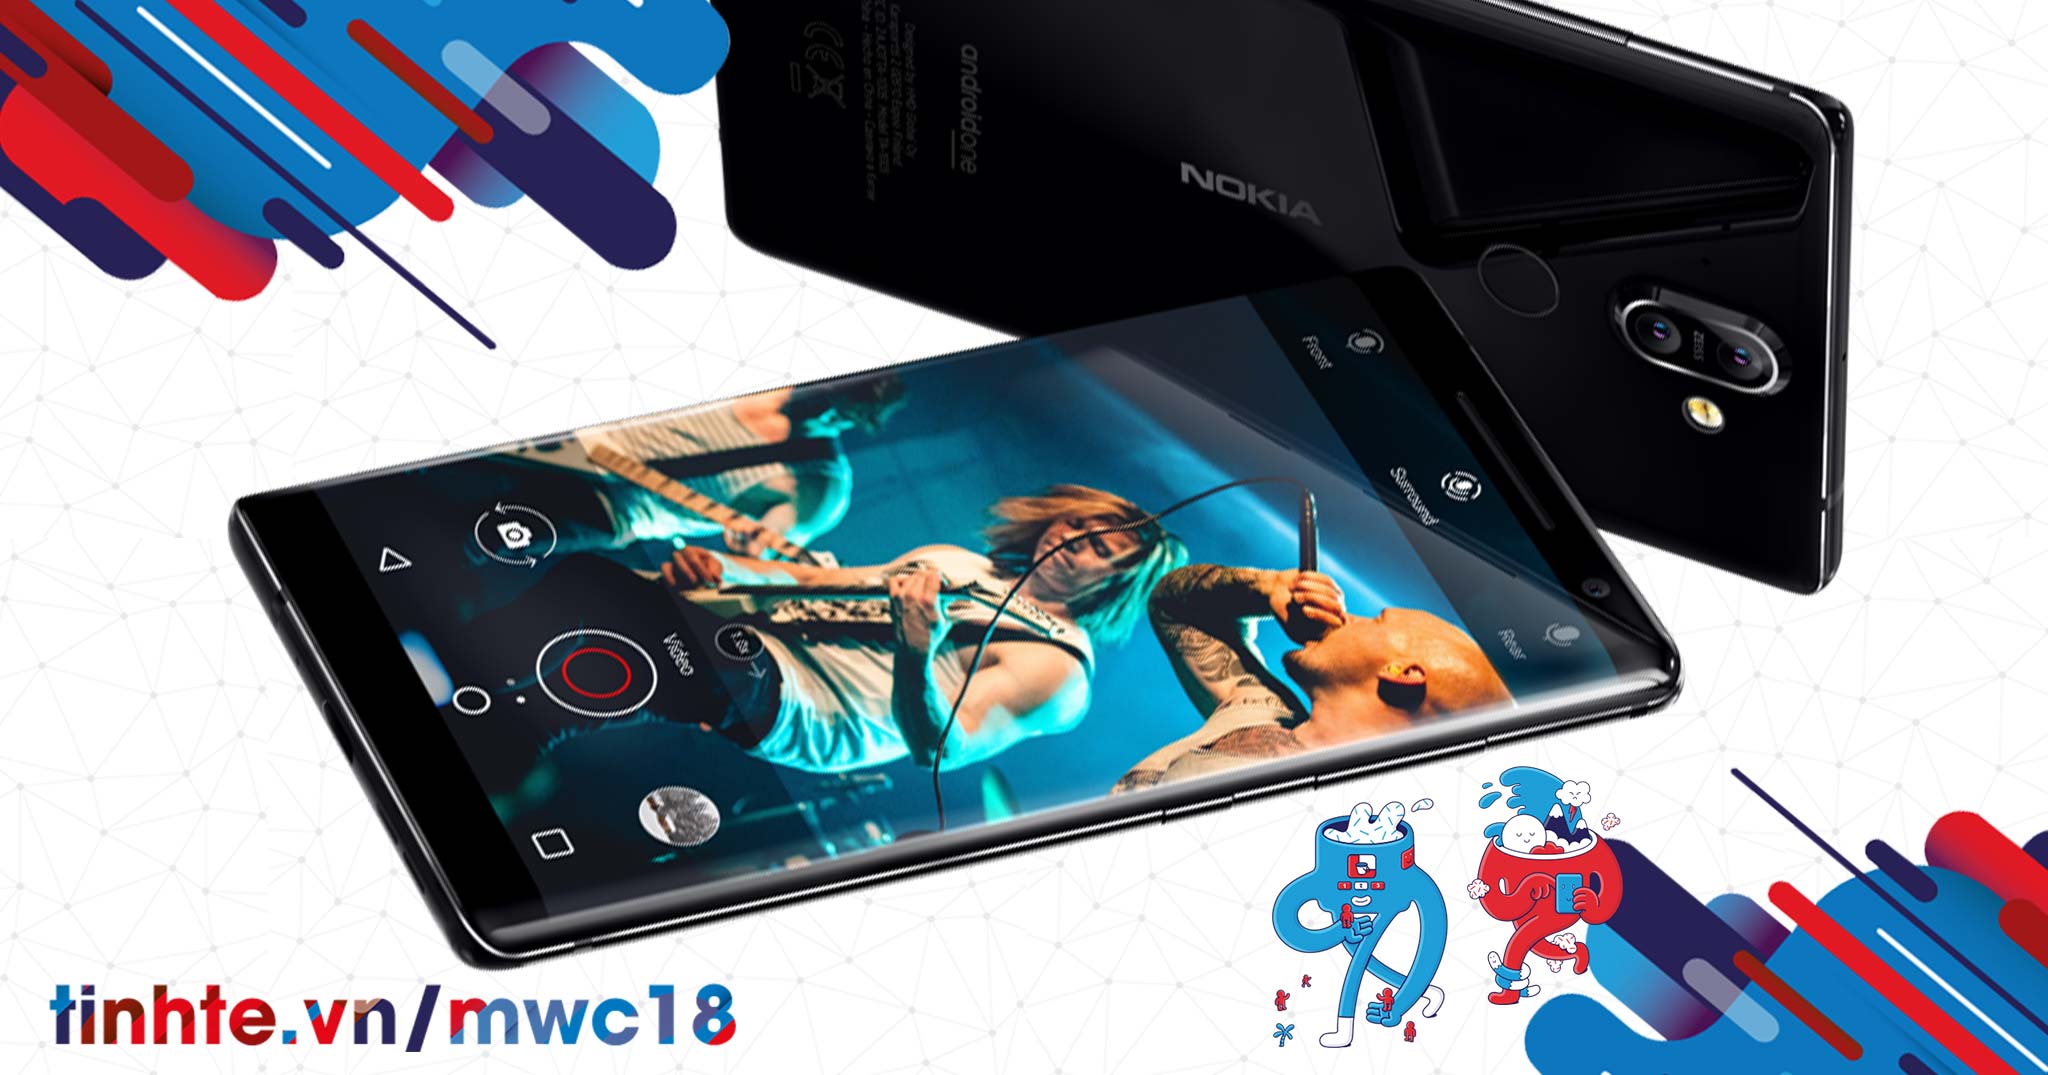 #MWC18: Nokia 8 Sirocco: màn hình cong pOLED 5.5", camera kép có ống kính tele, sạc không dây